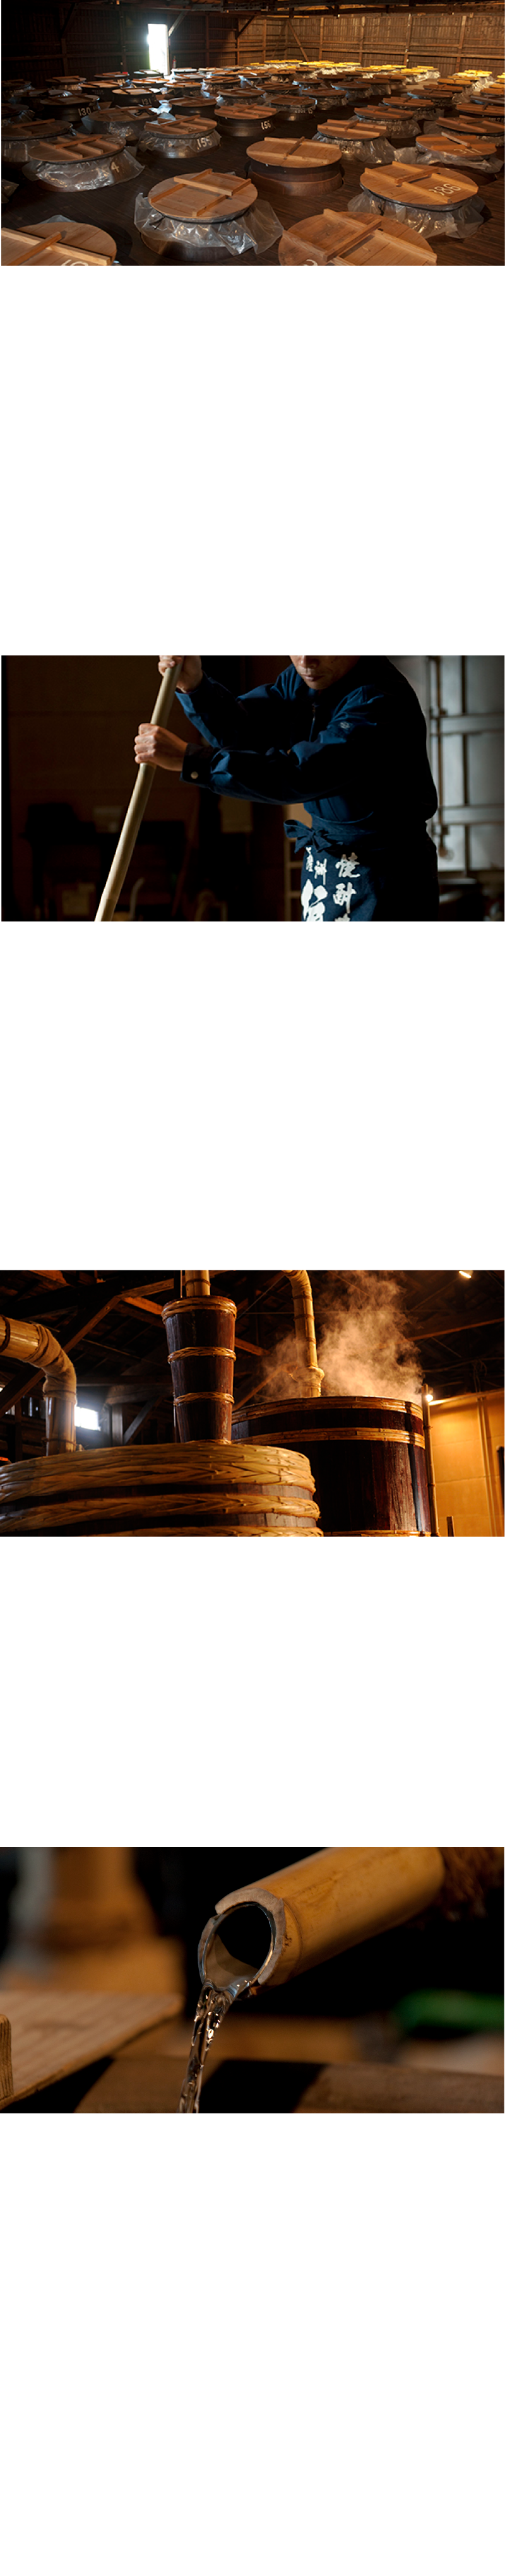 本格芋焼酎MORRIS（モーリス）です。香水も焼酎も蒸留して造るという製造工程は共通しています。